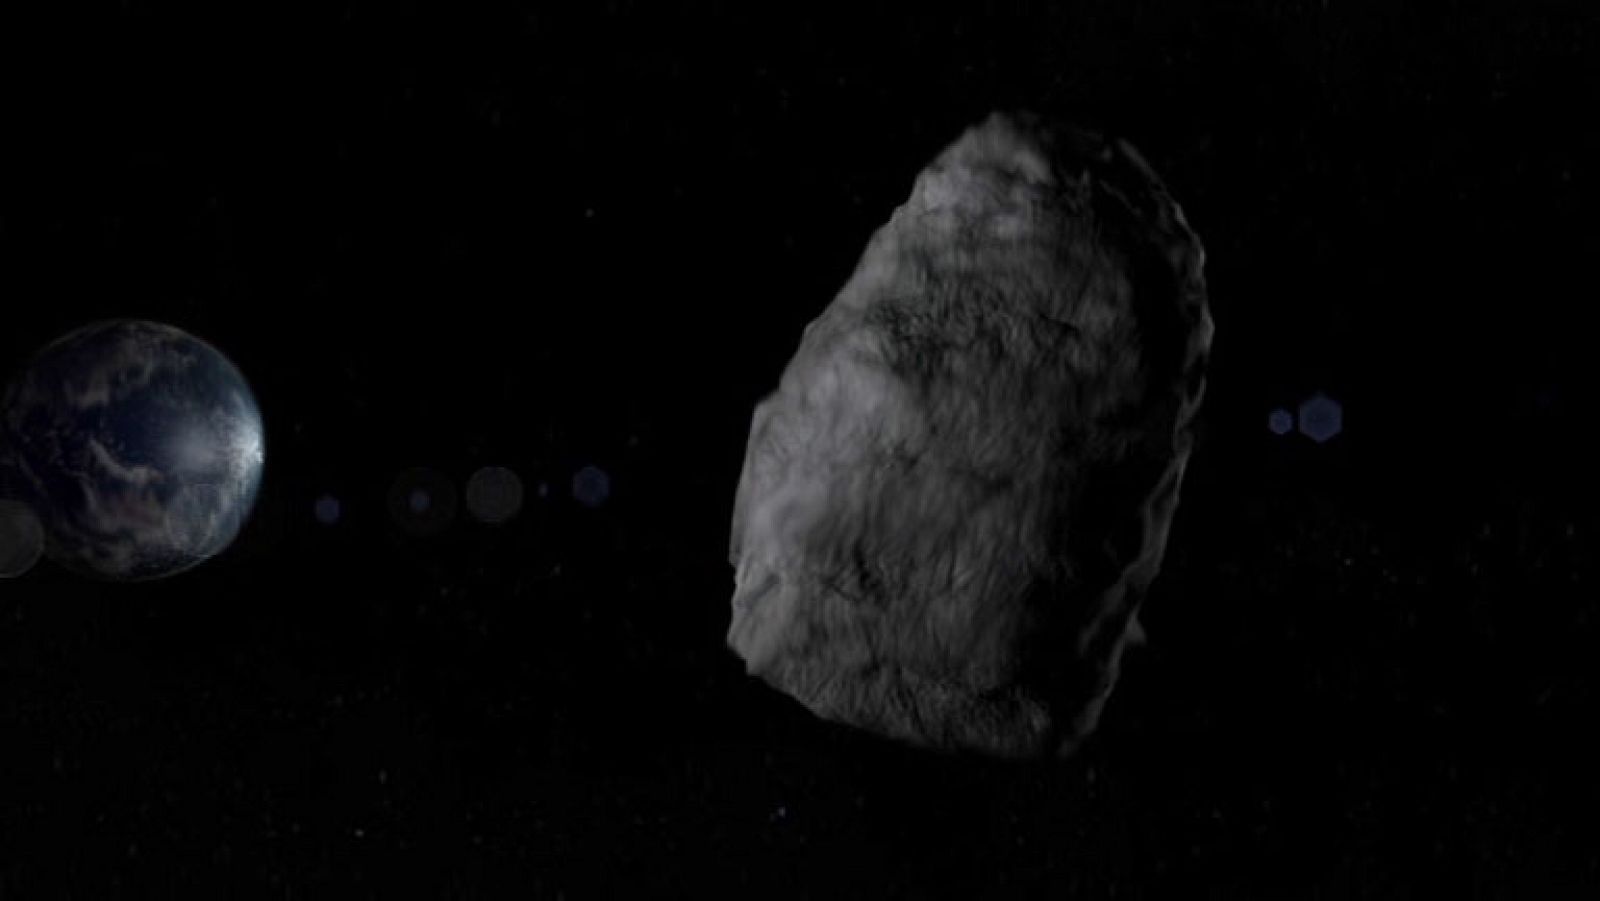 El asteroide 2005 YU55 es un objeto grande y oscuro que el proximo 8 de noviembre se cruza en su viaje por el Universo con nuestro planeta. Está considerado por la NASA como "potencialmente peligroso" por su tamaño y su proximidad a la Tierra. Sin